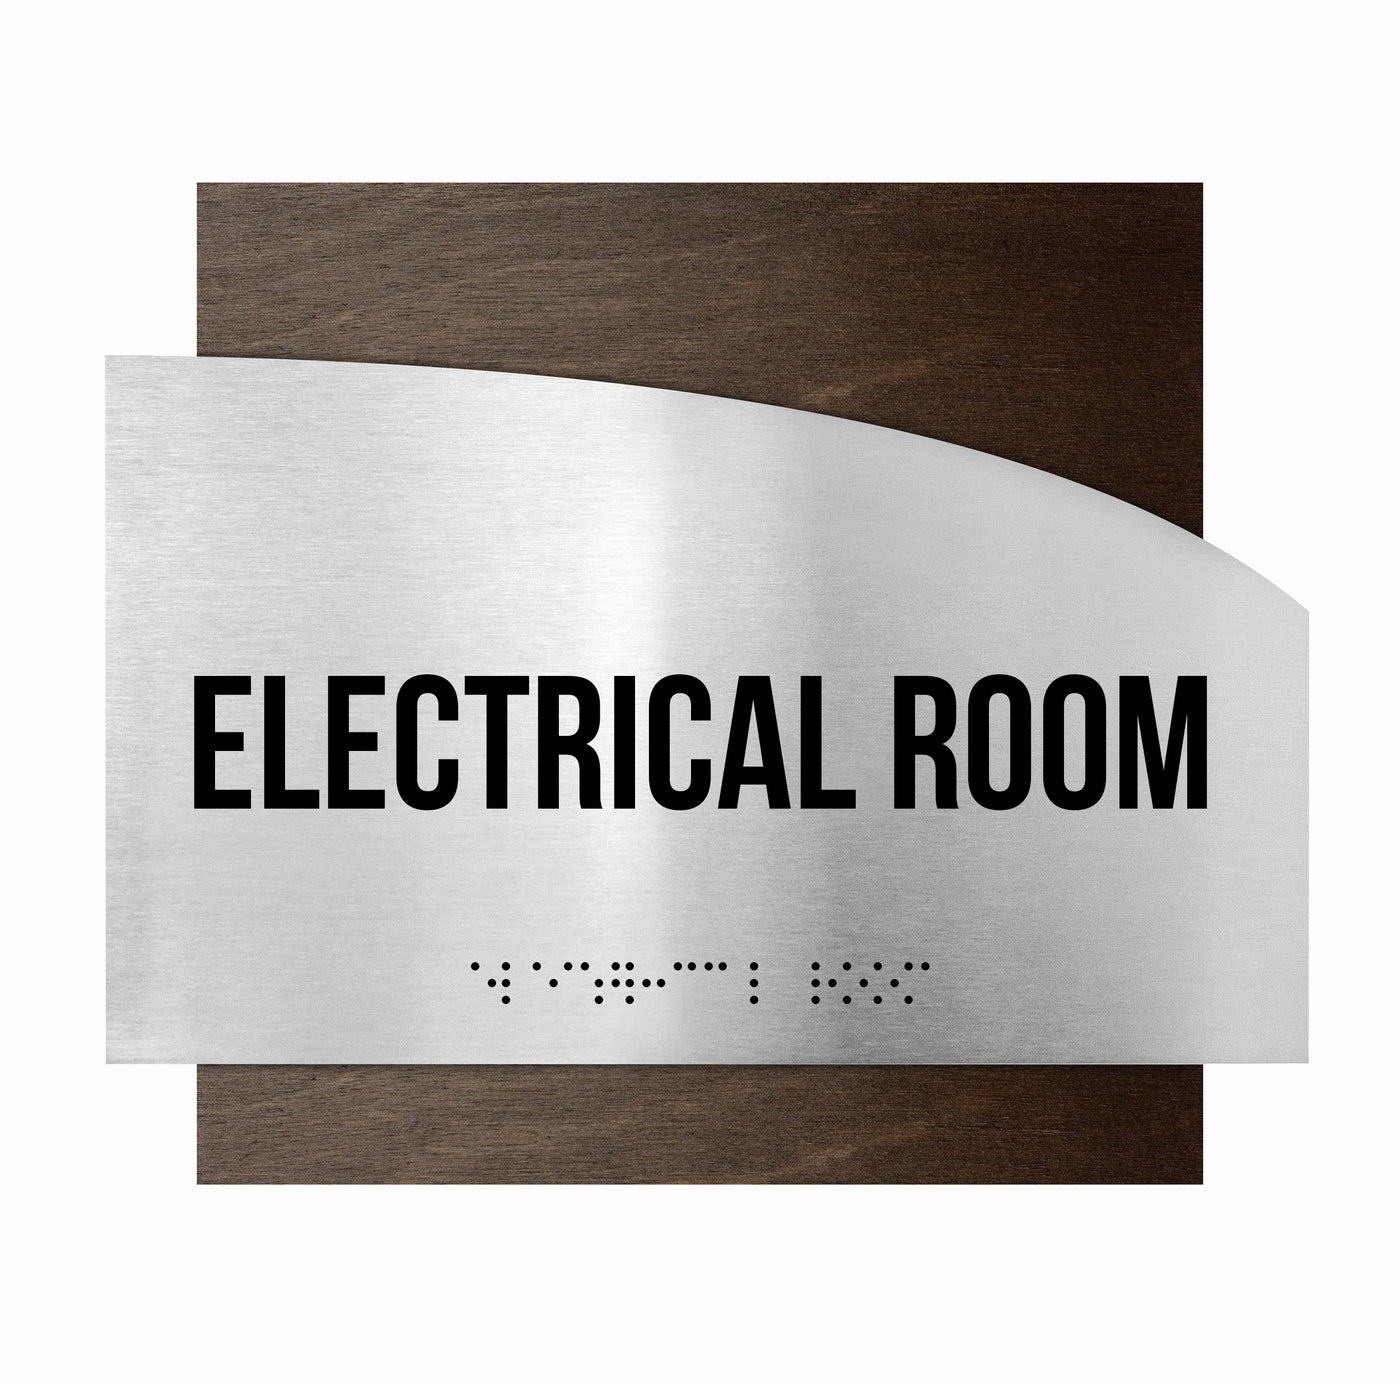 Electrical Room Steel Sign "Wave" Design